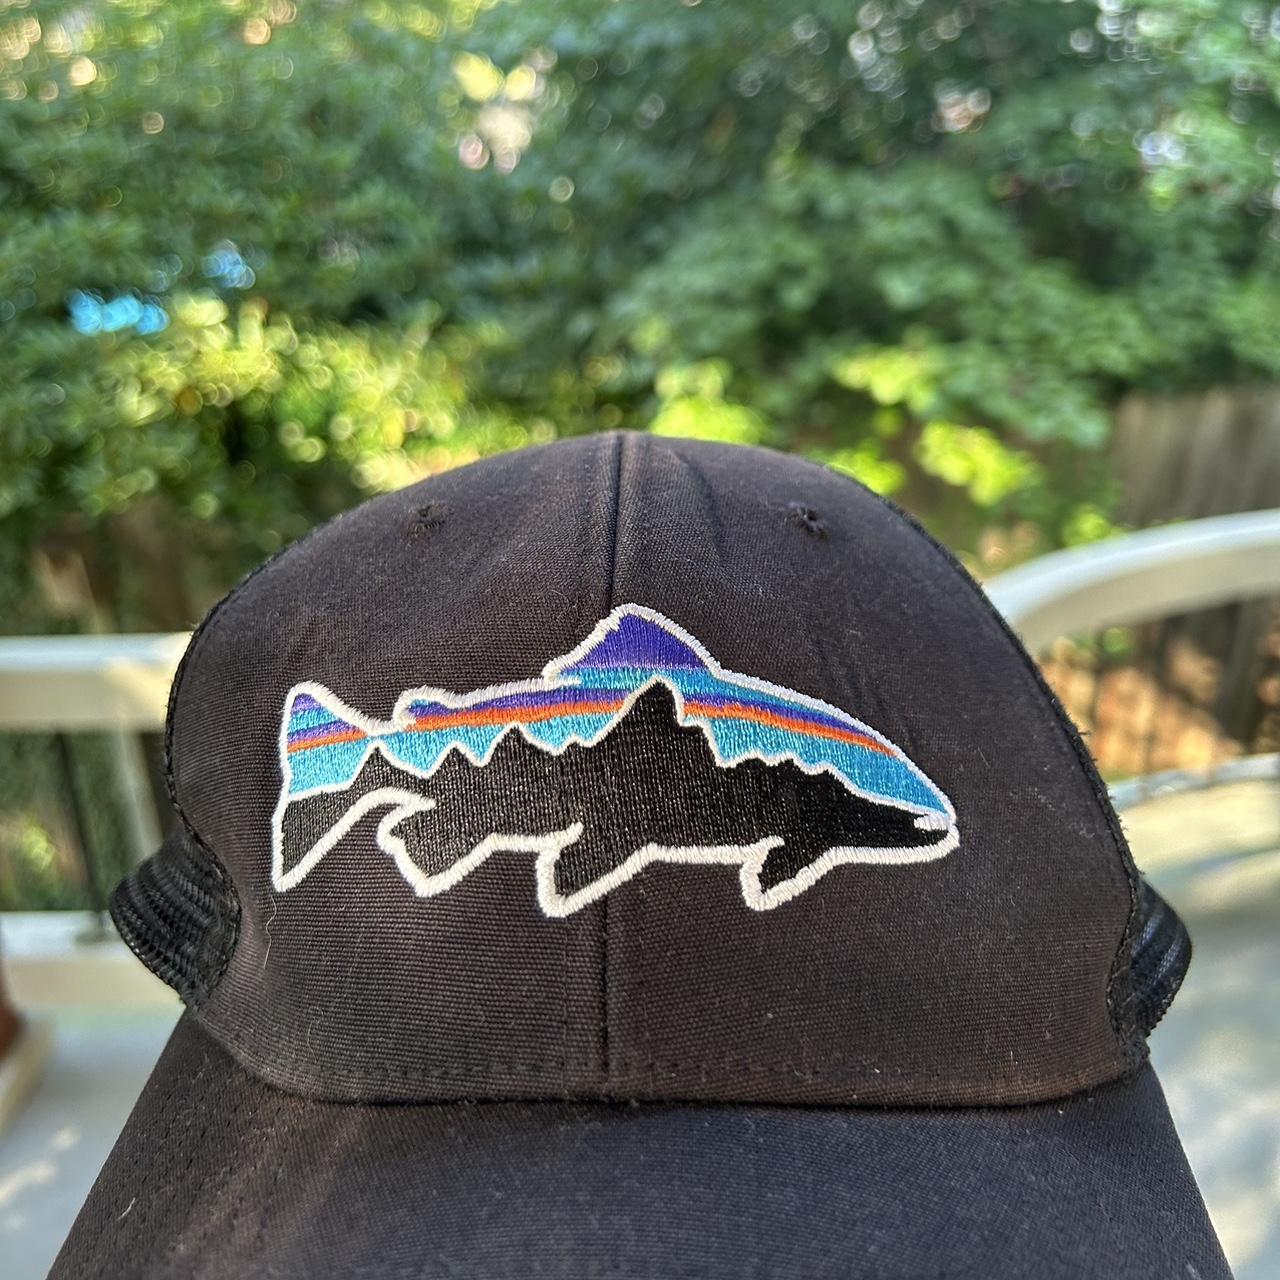 Patagonia hat with fish logo